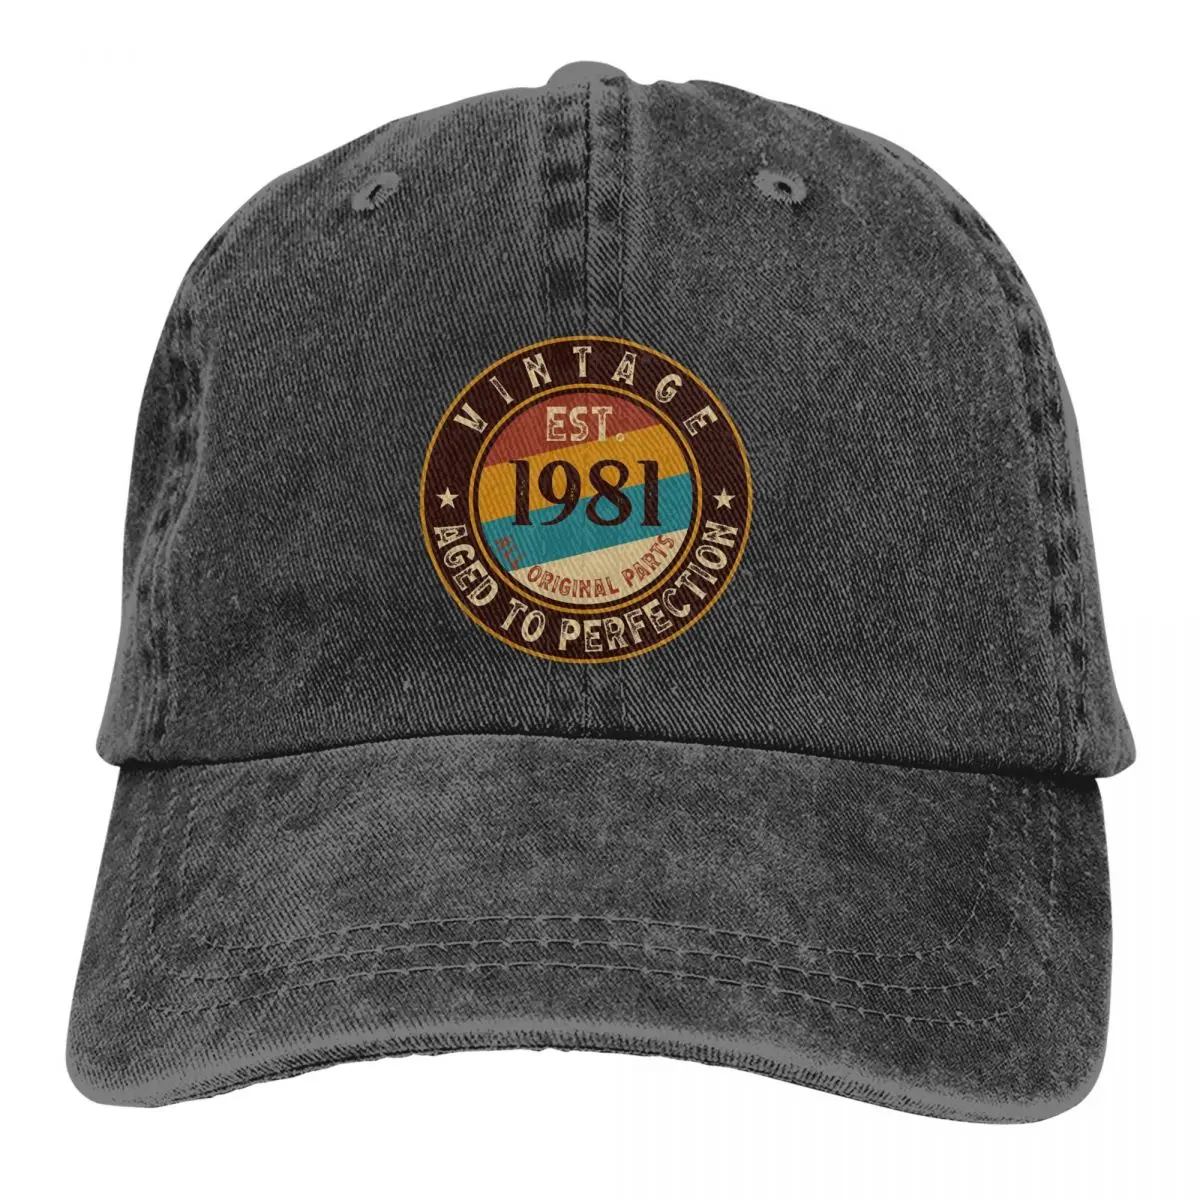 

Summer Cap Sun Visor Vintage Aged To Perfection Est Hip Hop Caps 1981 Cowboy Hat Peaked Hats